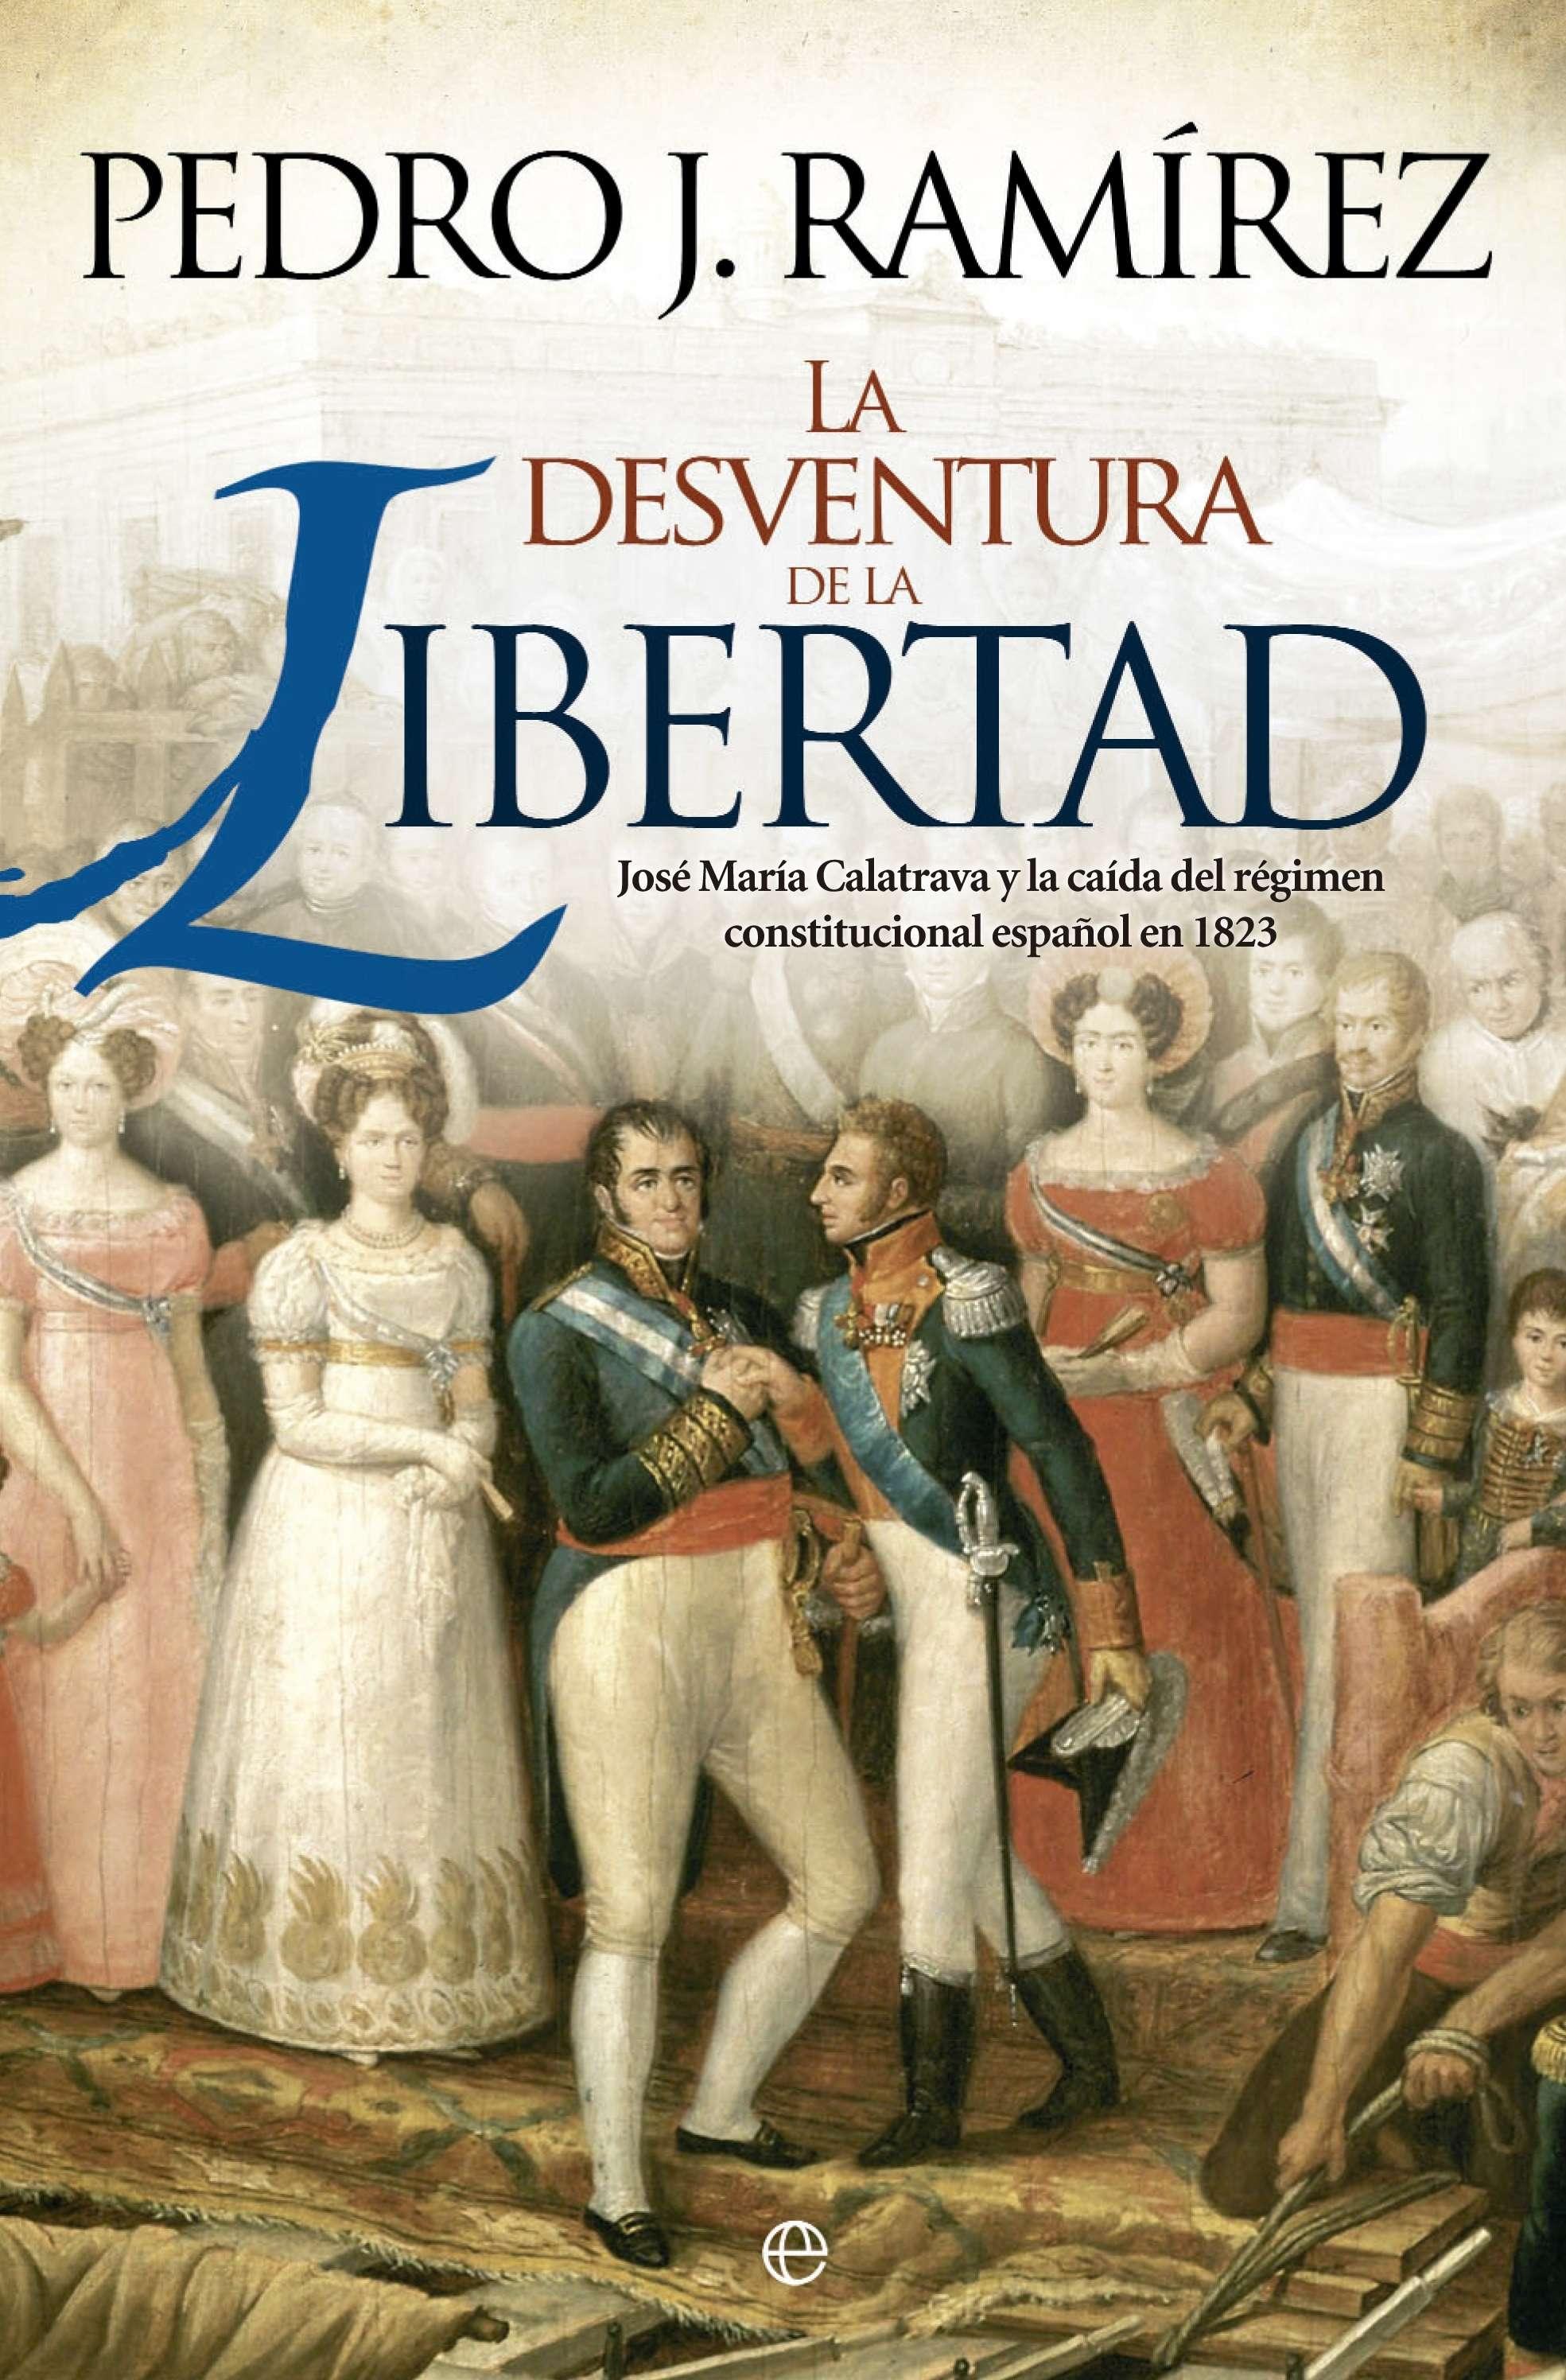 La desventura de la libertad "José María Calatrava y la caída del régimen constitucional español en 1823"